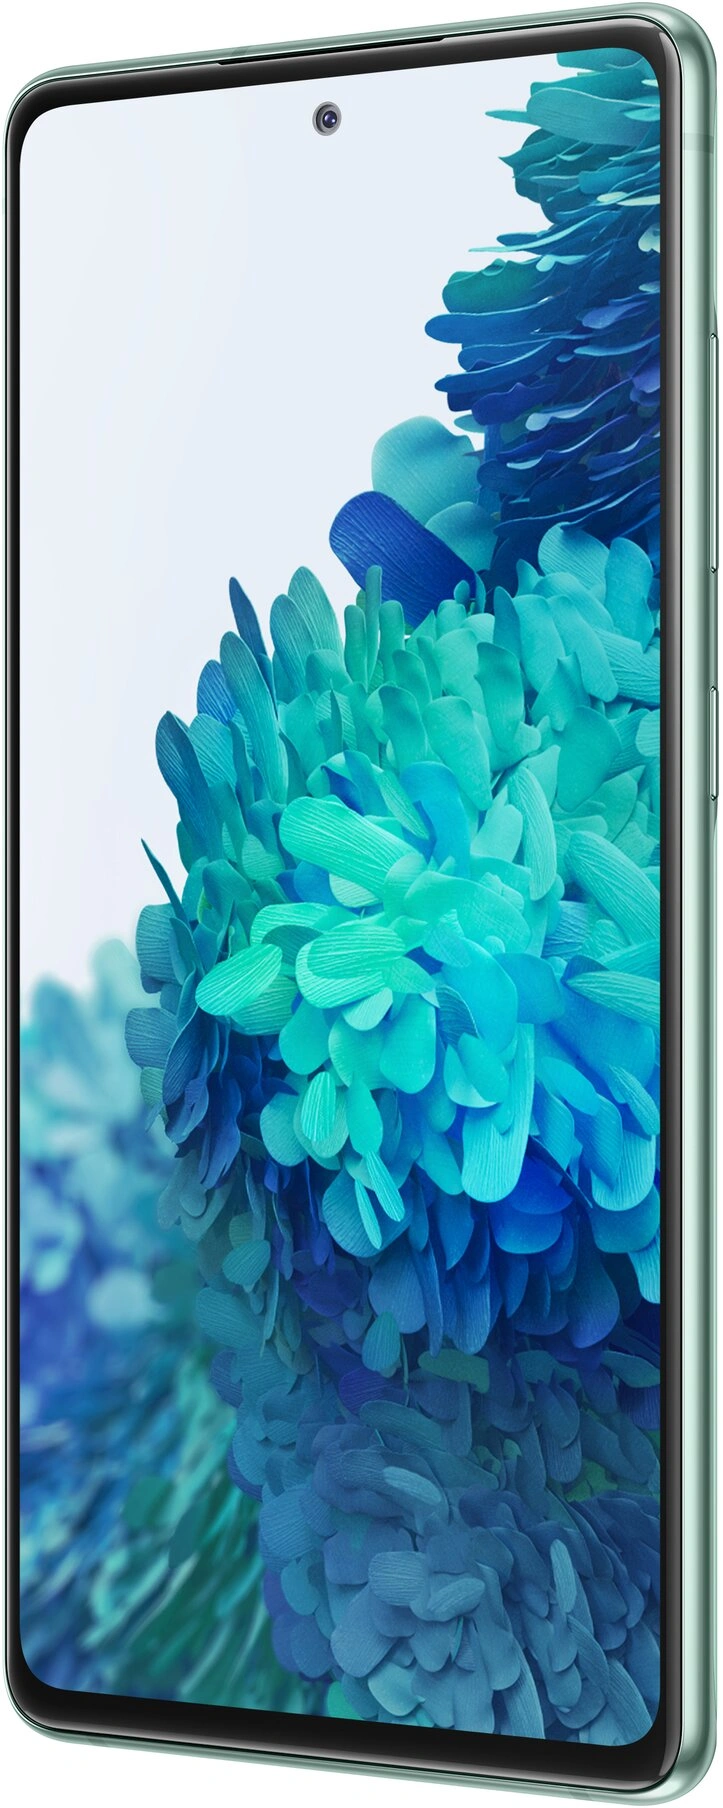 Samsung Galaxy S20 FE 6/128 GB, Green 